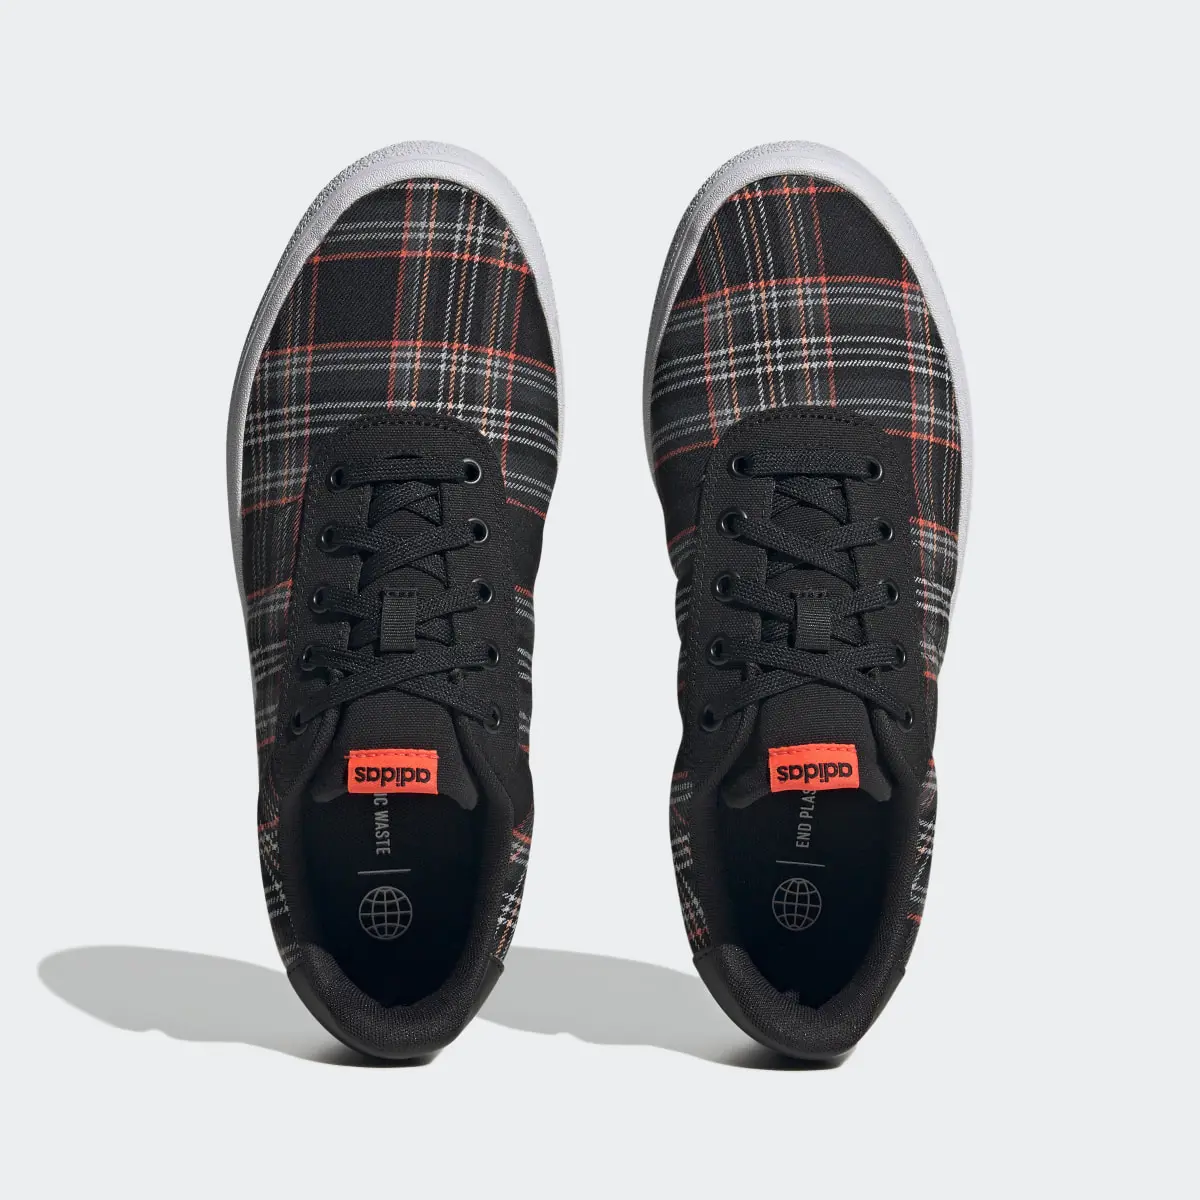 Adidas Vulc Raid3r Lifestyle Skateboarding 3-Stripes Branding Shoes. 3